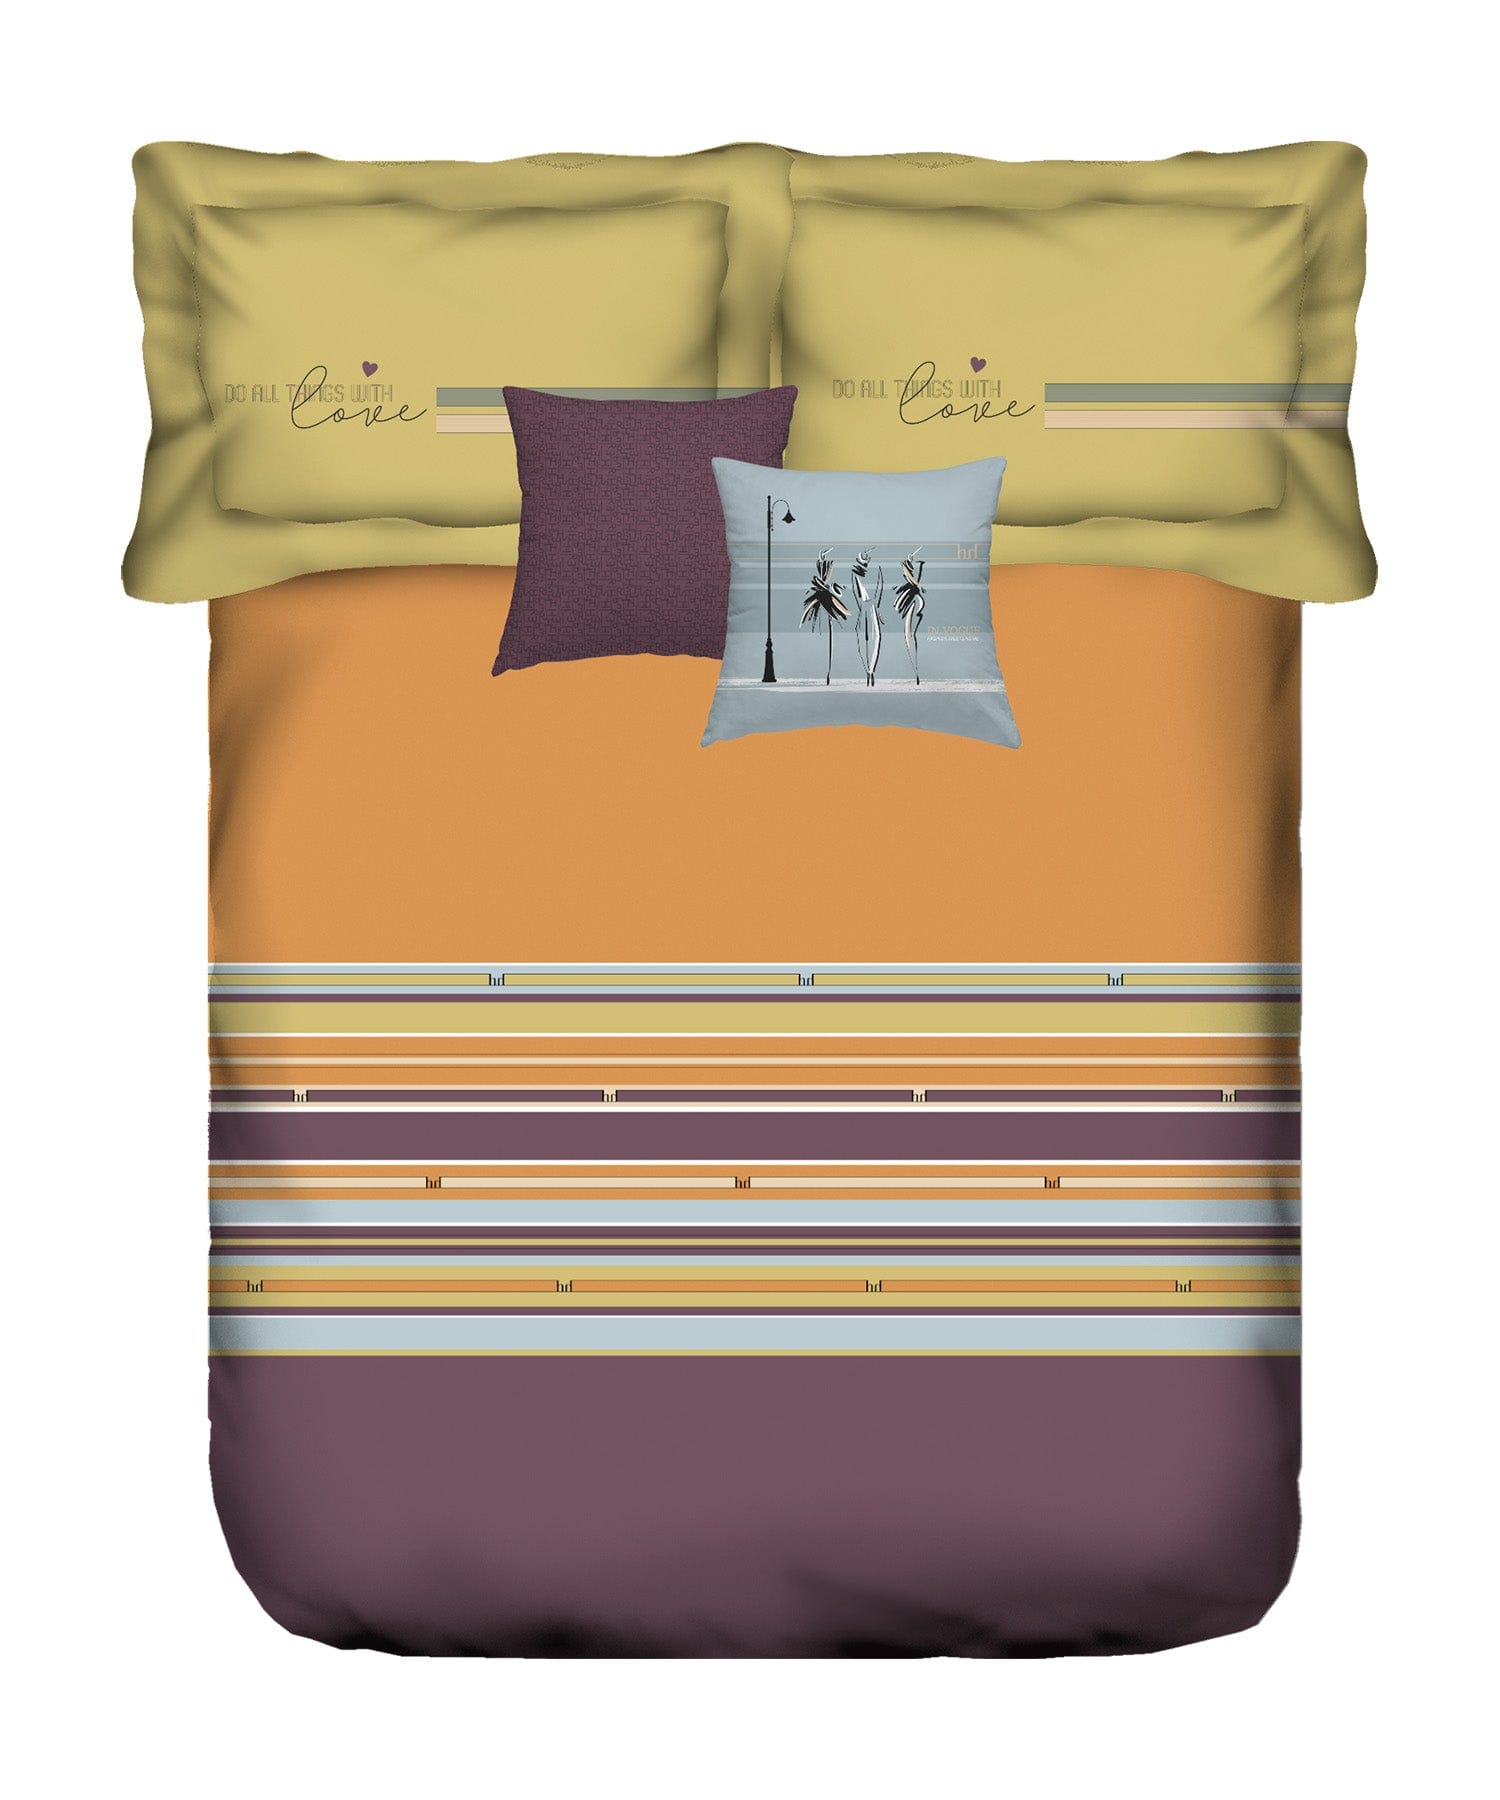 King Size Bedsheet ₹1679/-